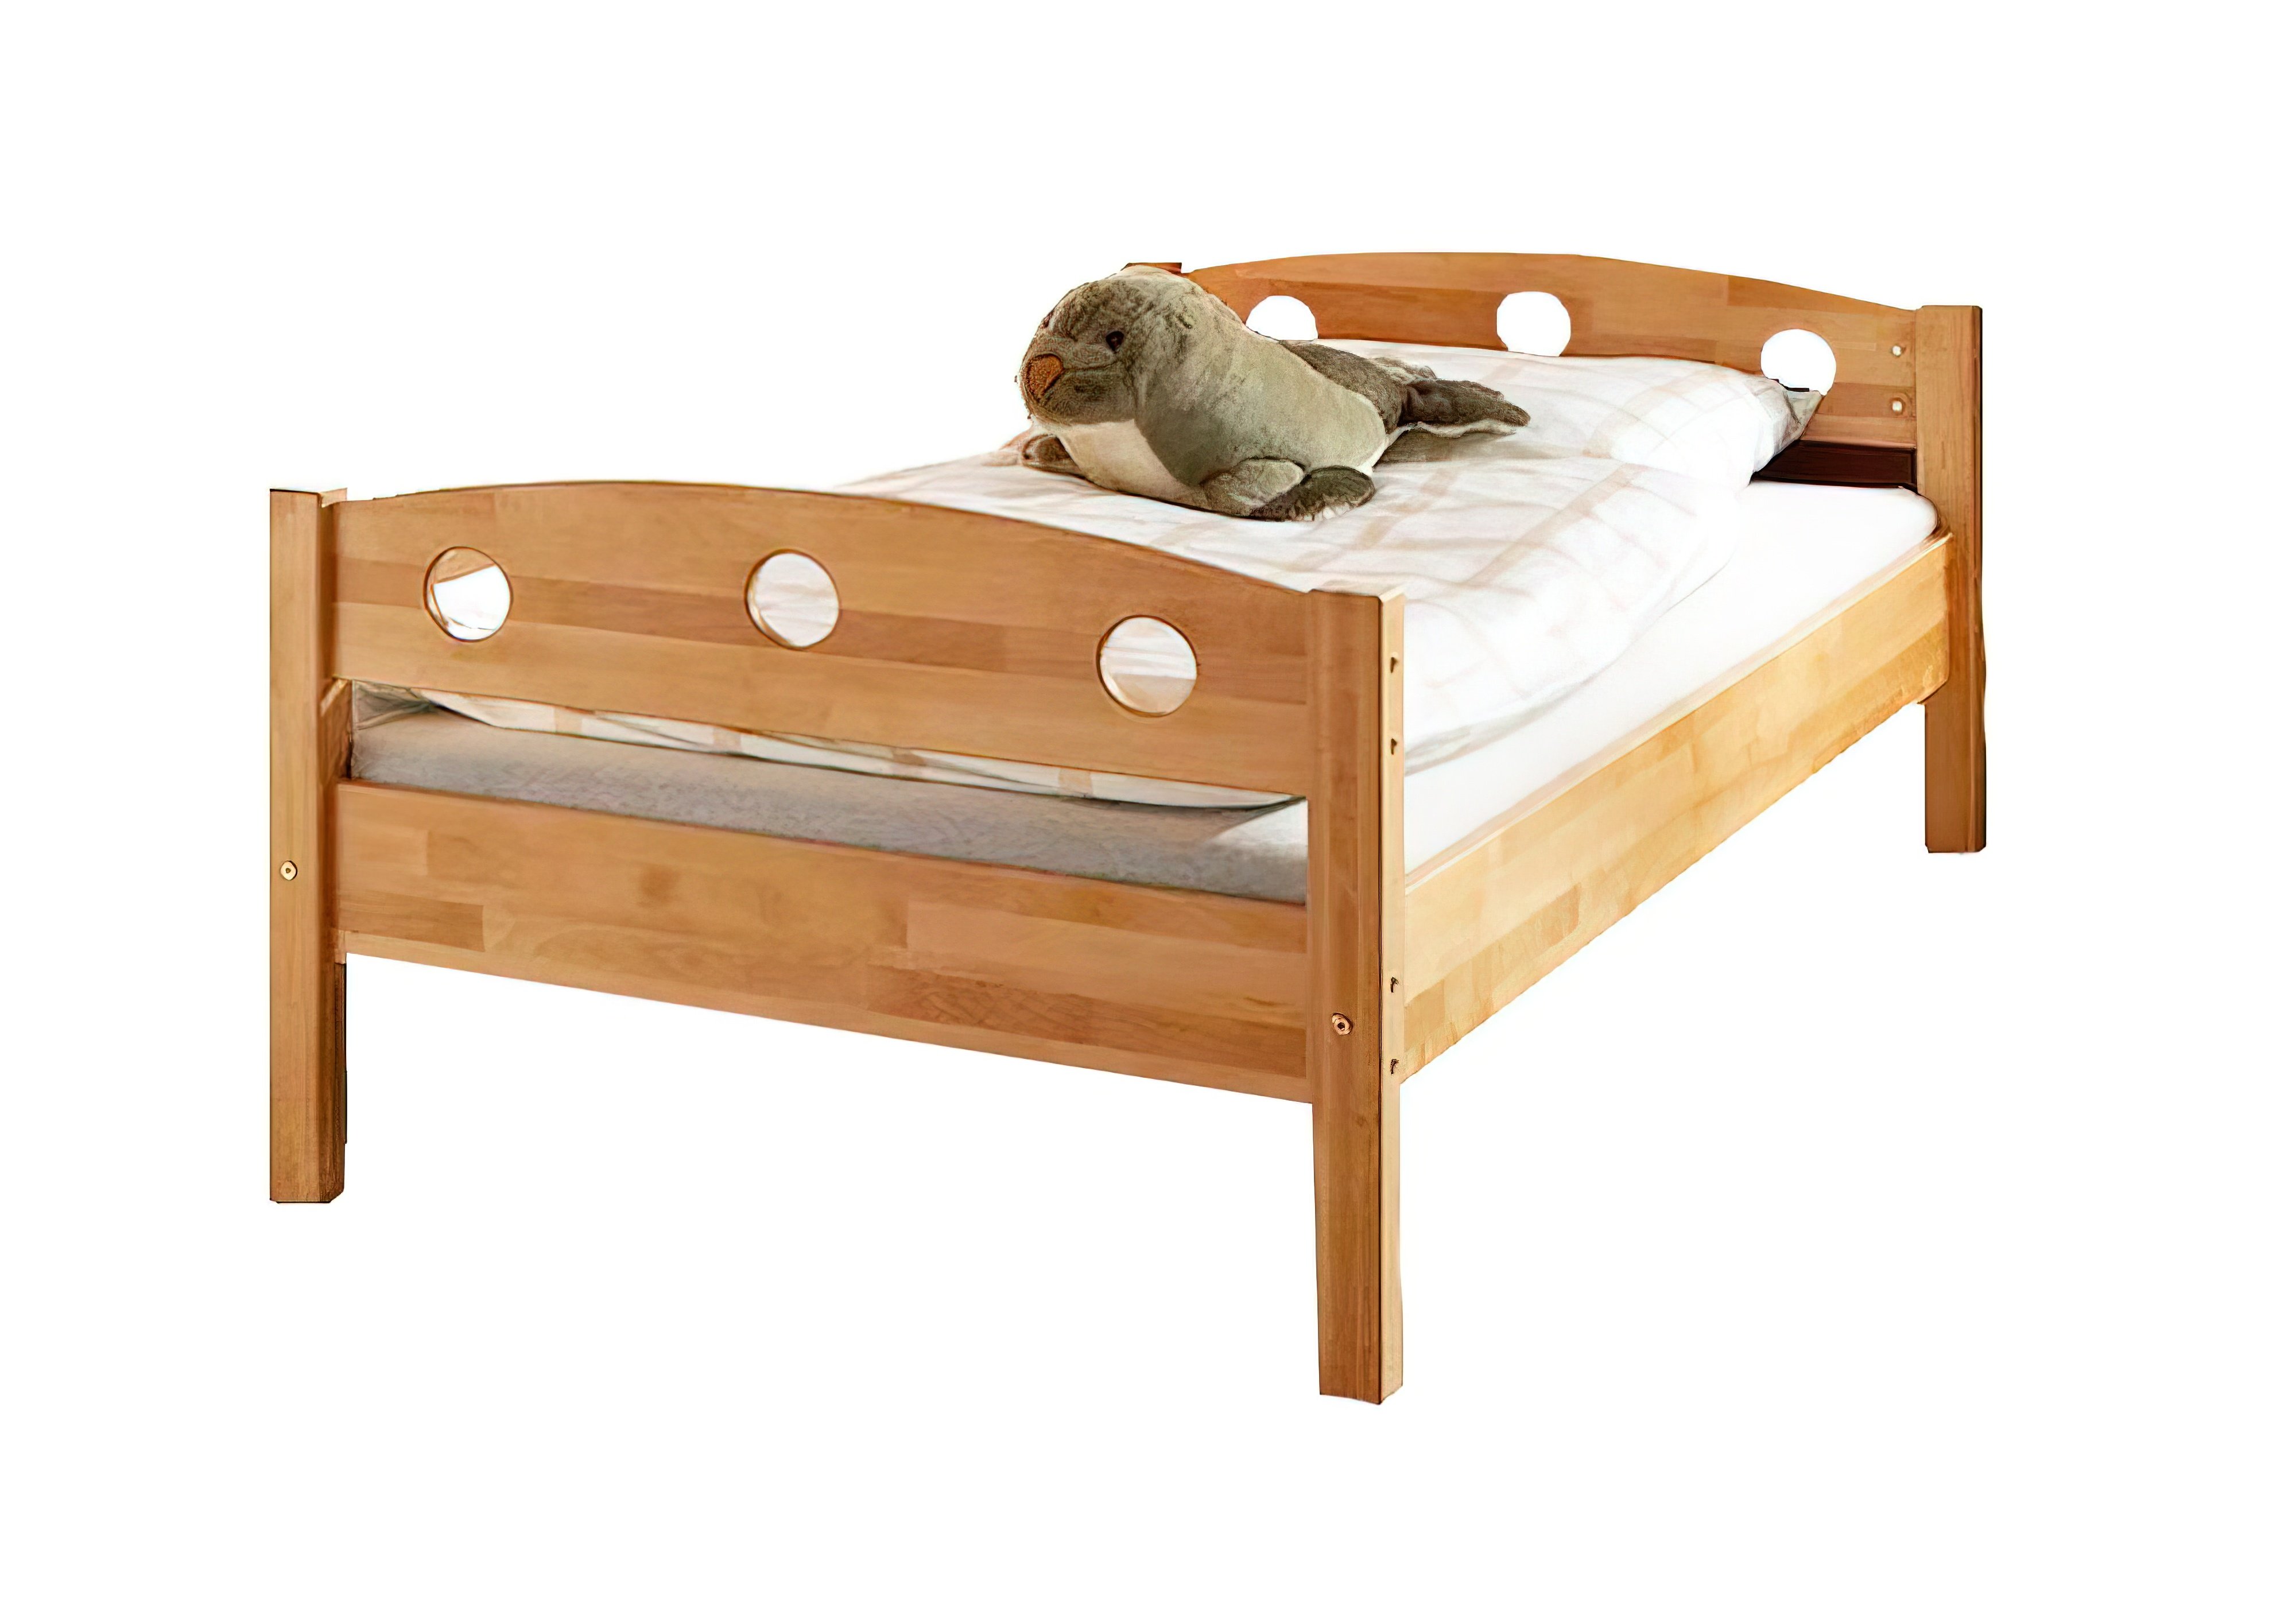  Купить Детские кровати Детская кровать "Mobler b08-1" Mobler